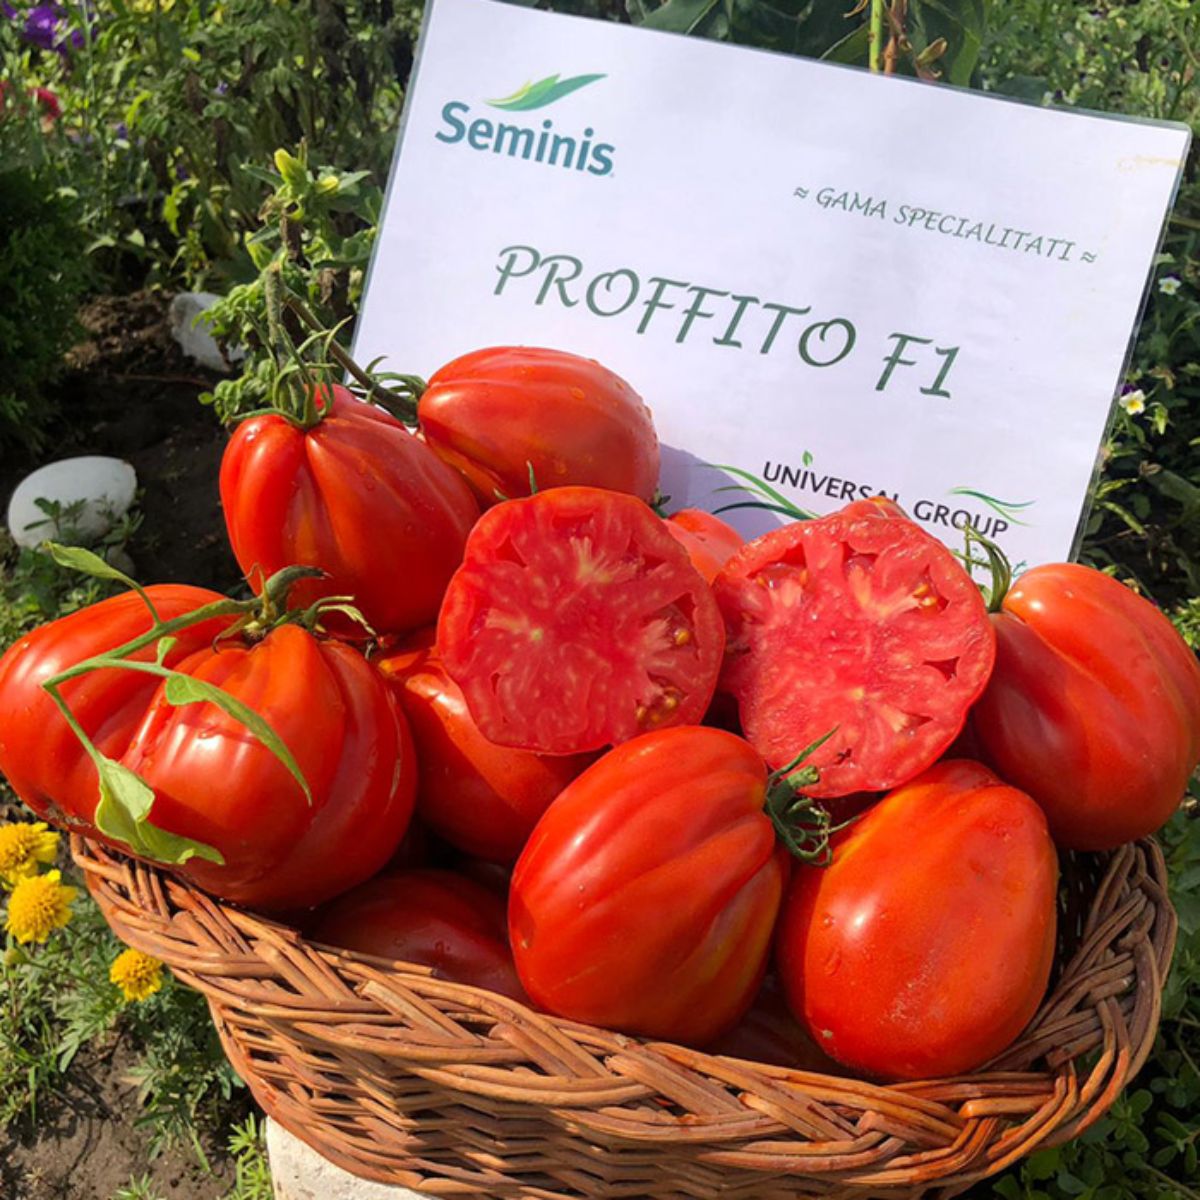 Tomate - Seminte de tomate Profitto F1, 100 seminte, hectarul.ro